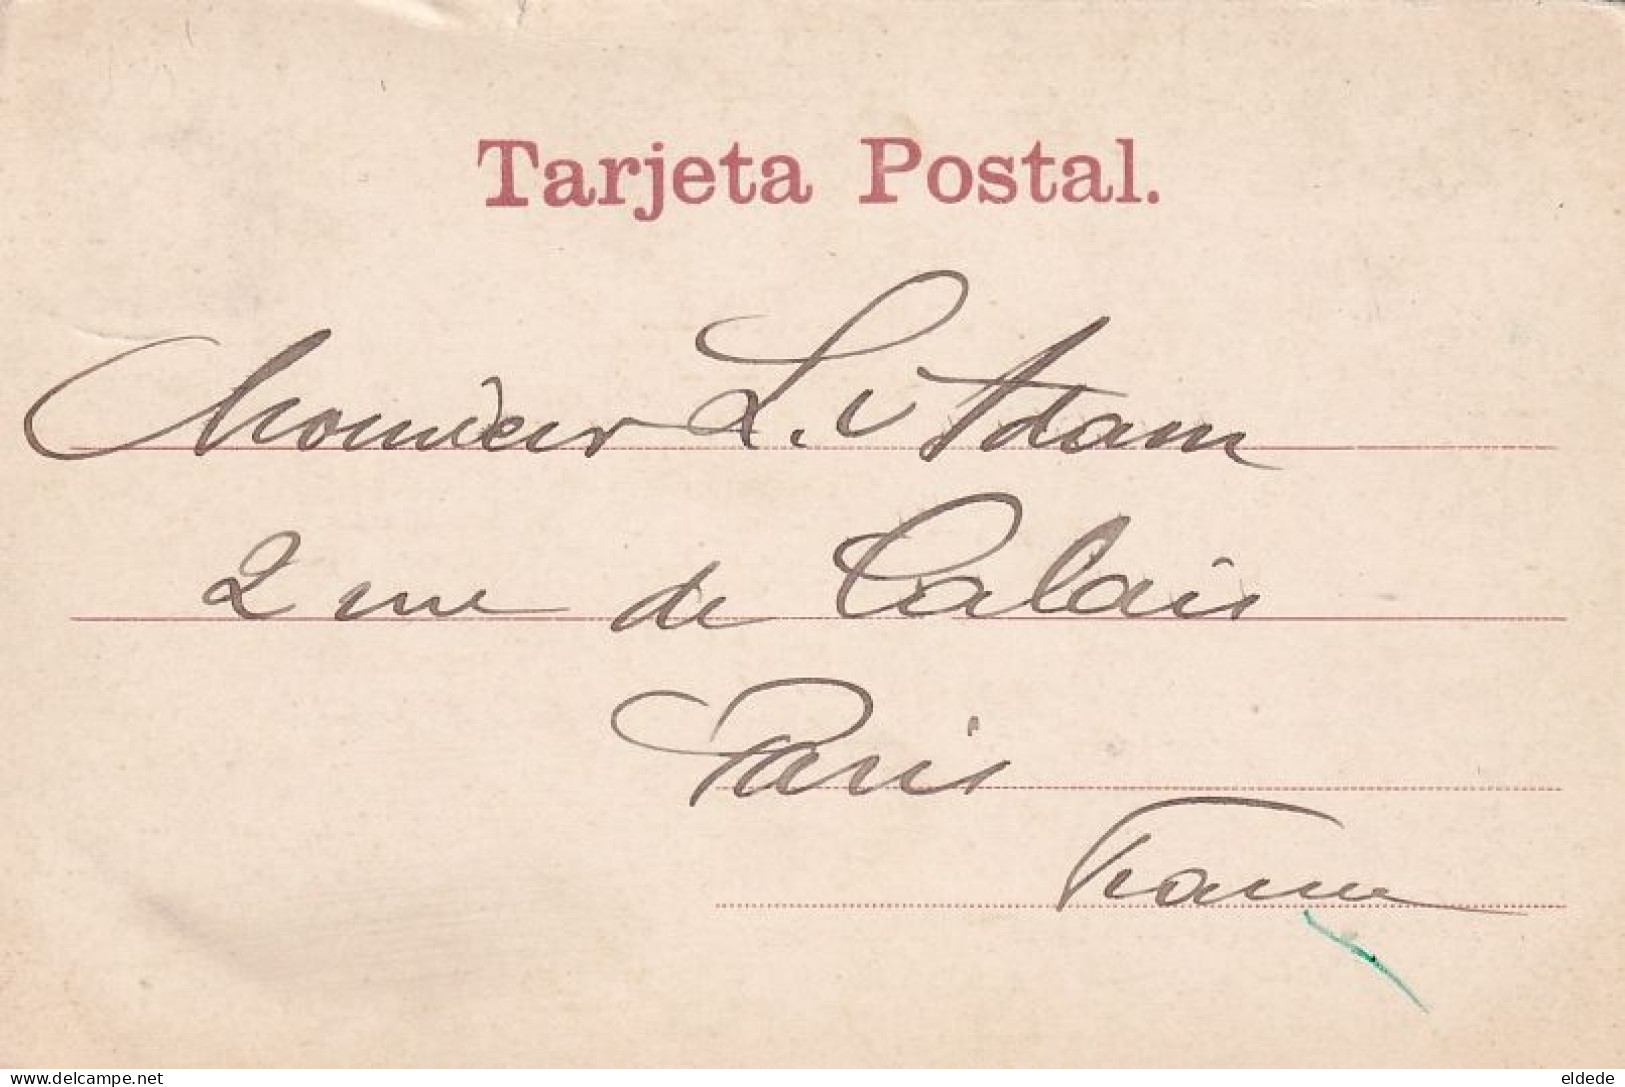 Manila Hand Colored Litera De Los Indigenas Pioneer Tarjeta Postal Hammock Transportation Slavery - Philippines